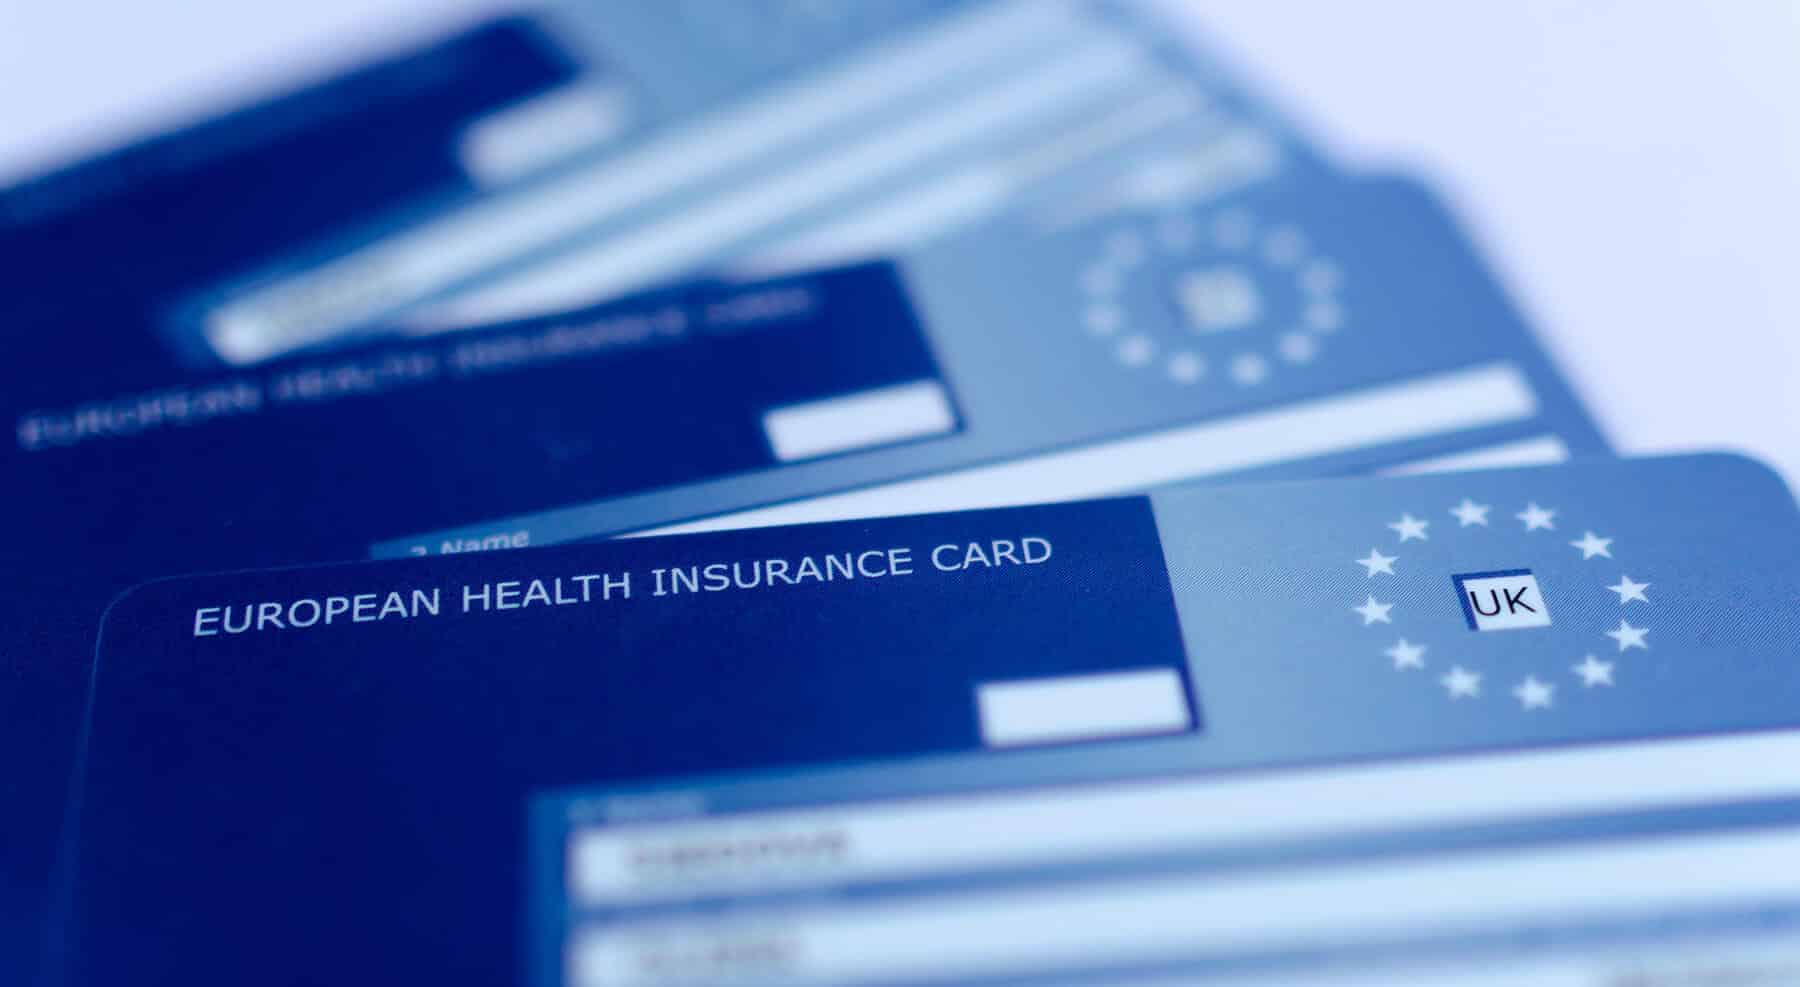 Three blue European Health Insurance Card